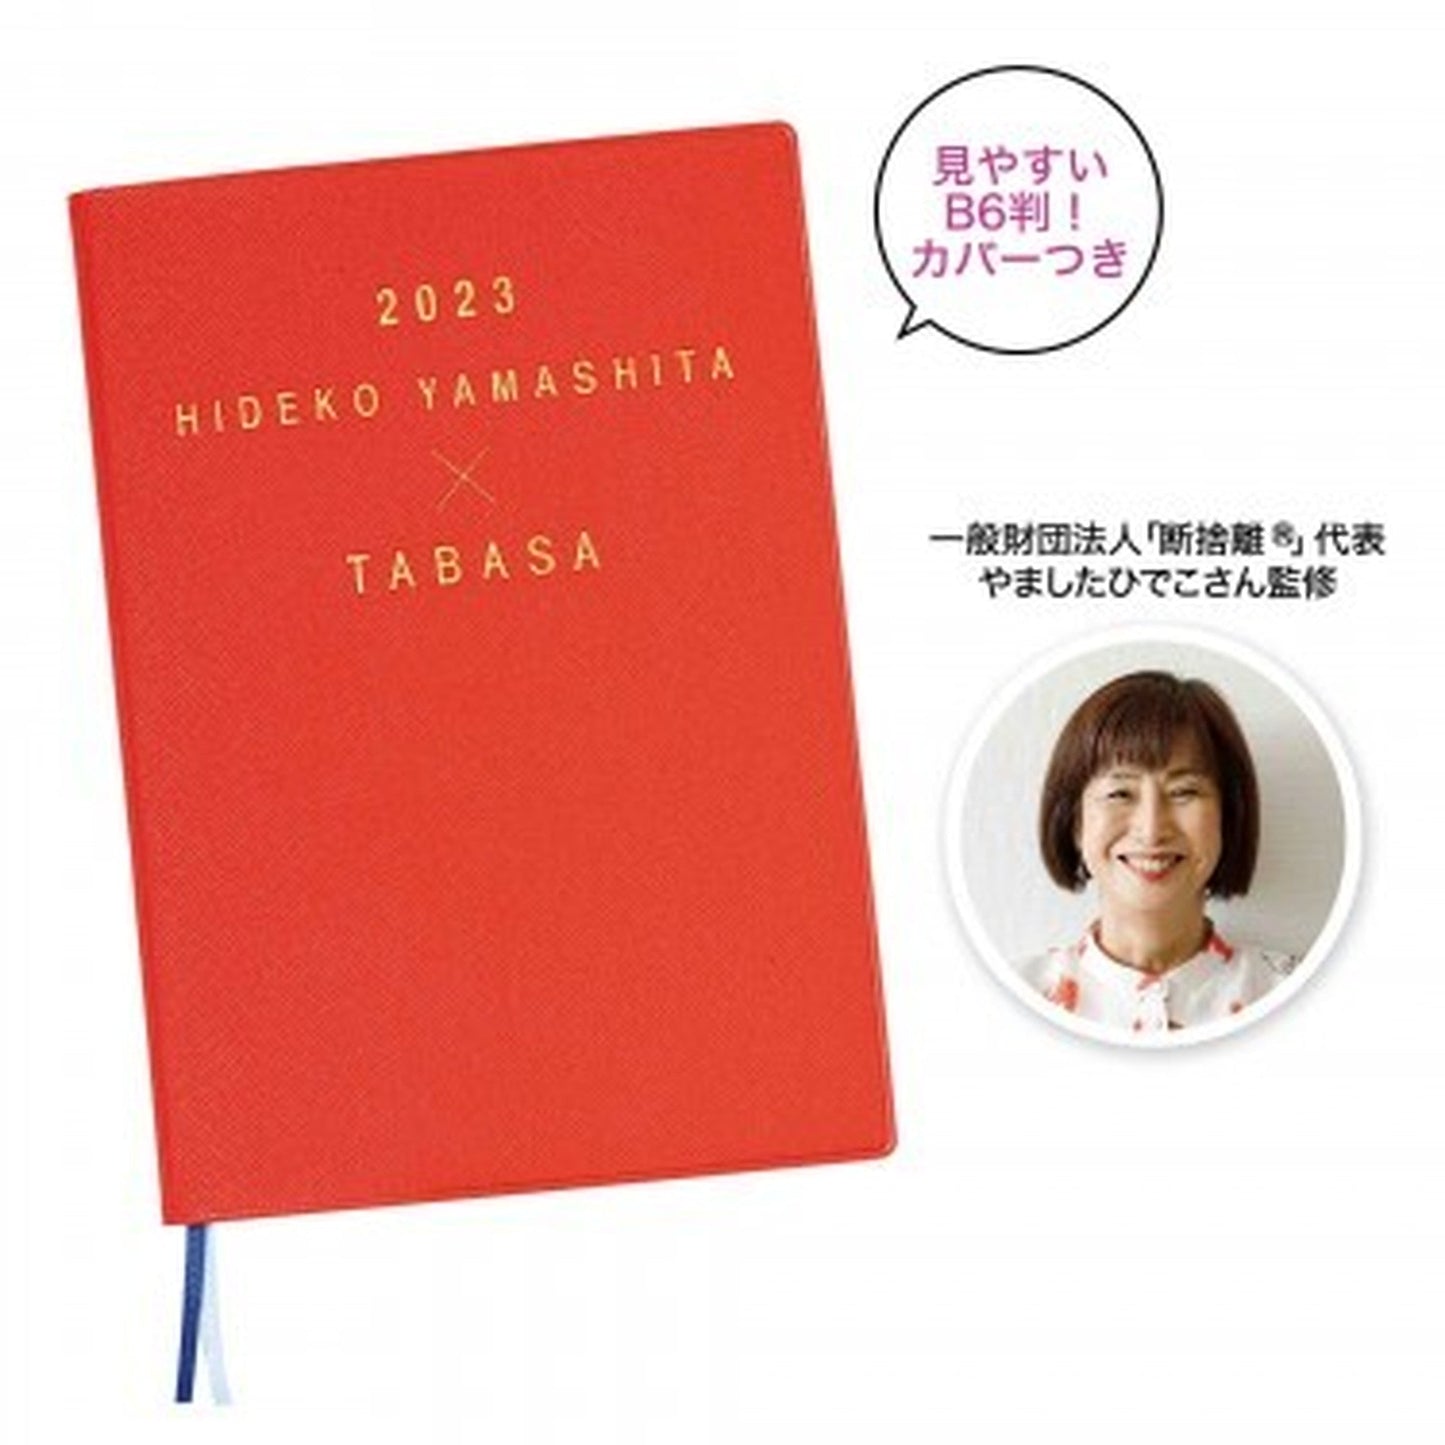 素敵なあの人 2023年 2月号 HIDEKO YAMASHITA TABASA スケジュール帳